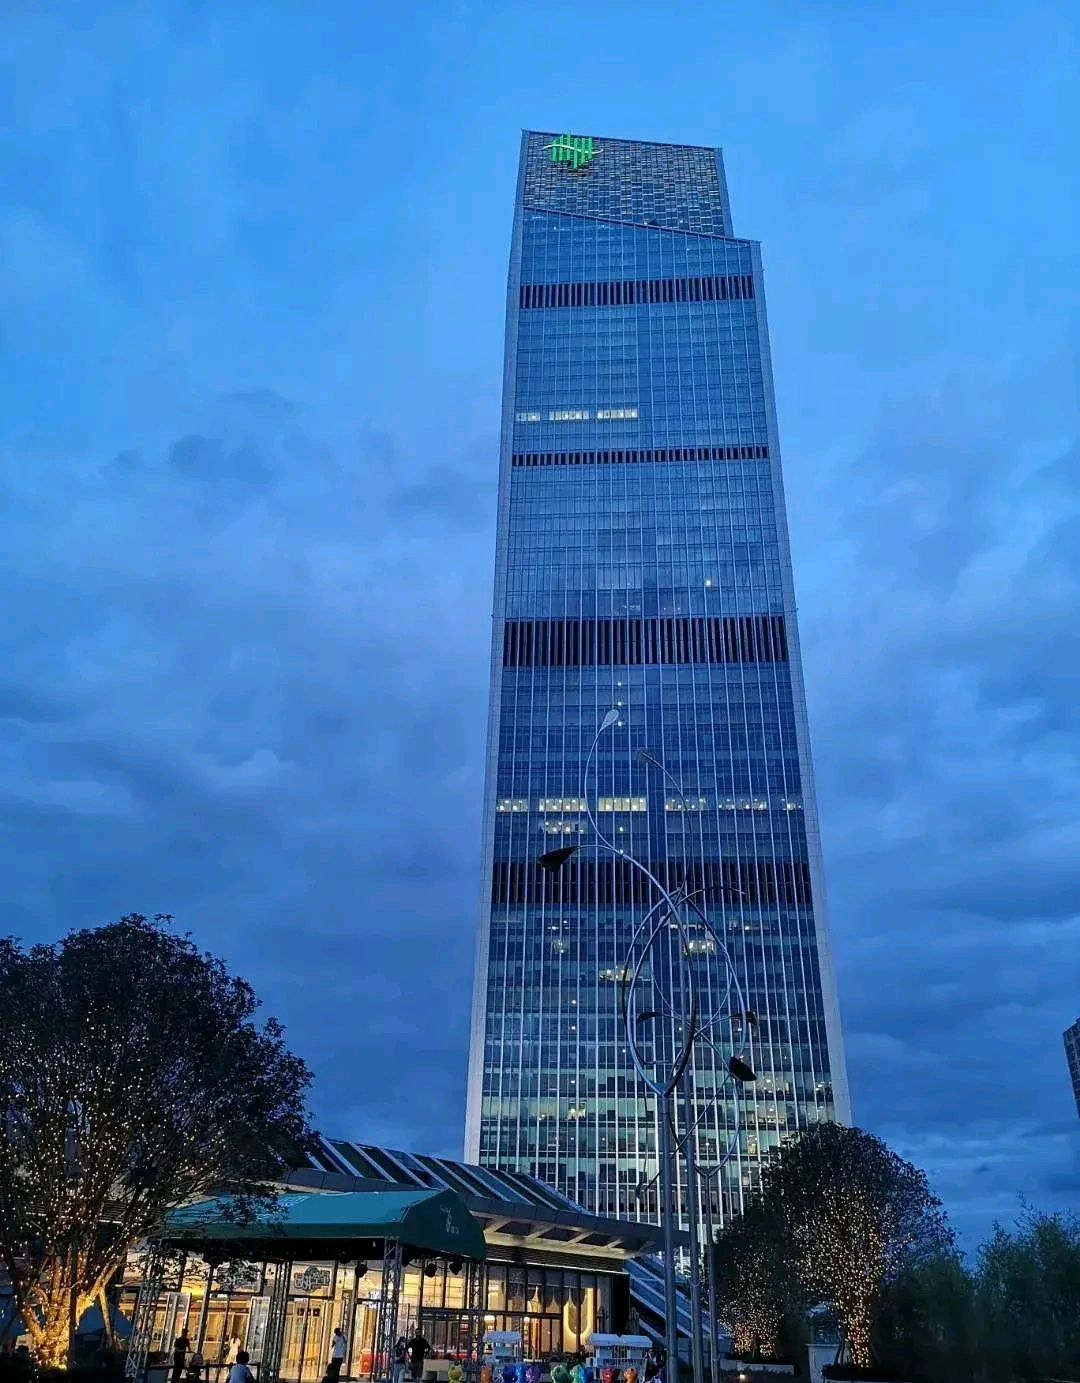 昆明第一高楼春之眼,主塔项目407米高,将会带动主城区商业吗?